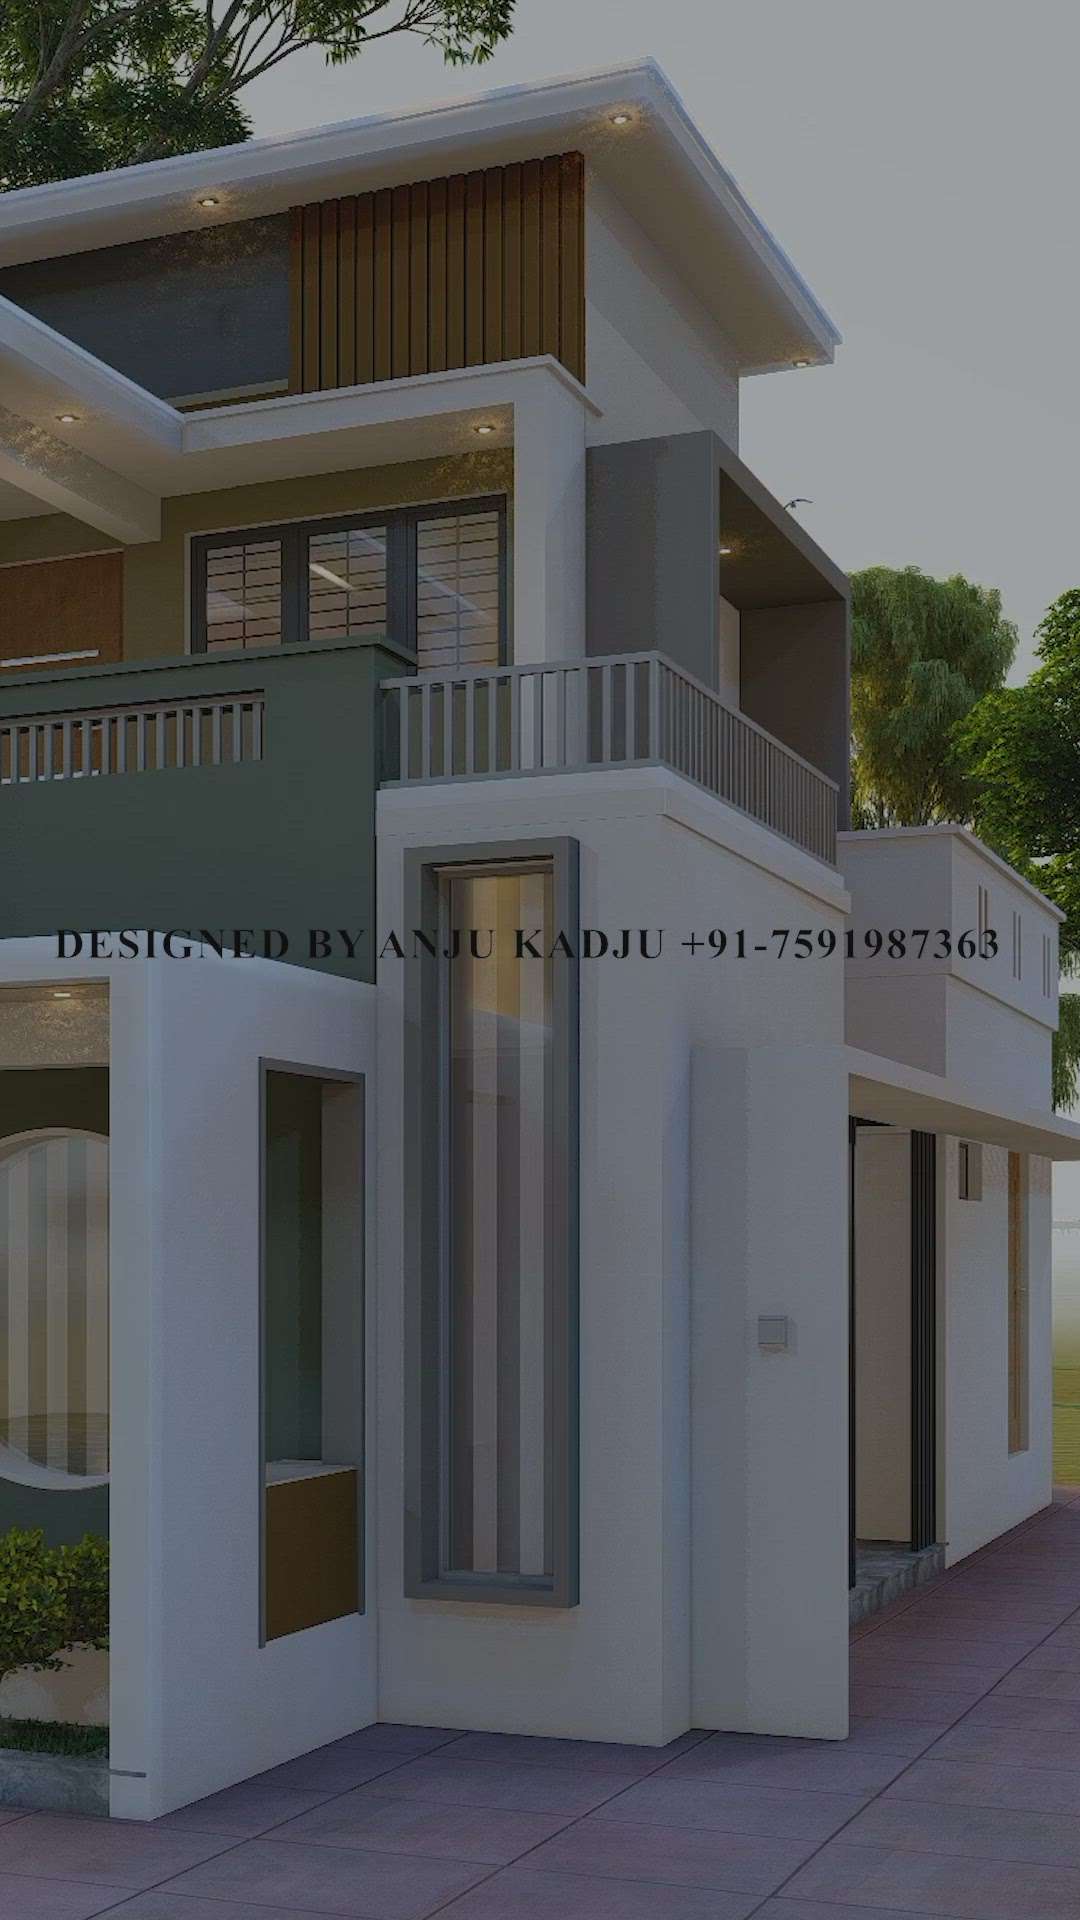 contemporary house design kerala latest
online 3d design service
designer anju kadju
 #ContemporaryHouse #ContemporaryDesigns #HouseDesigns